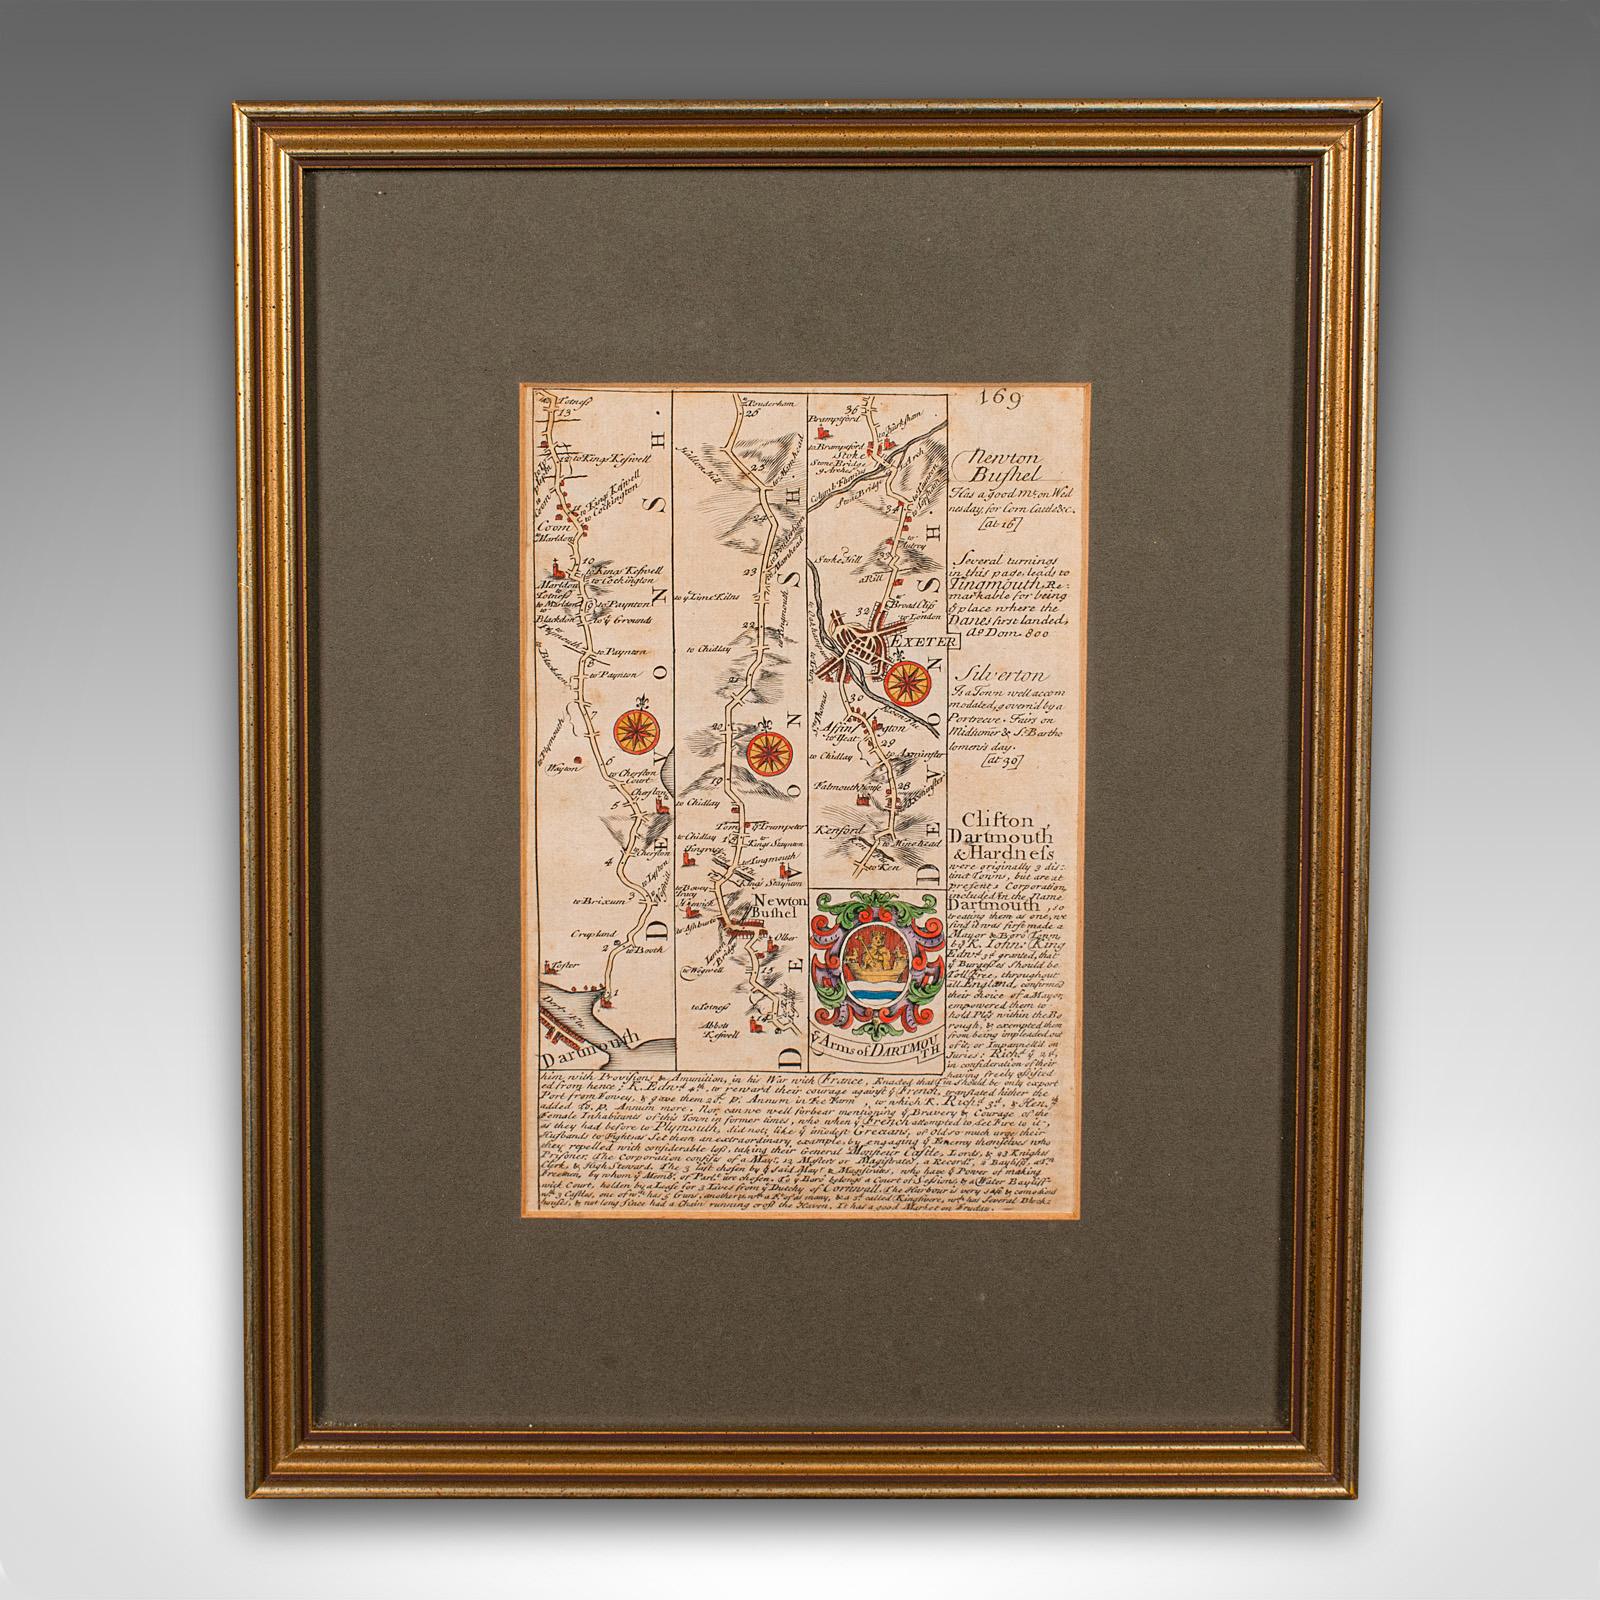 Il s'agit d'une ancienne carte routière du South Antiques. Gravure lithographique anglaise encadrée d'intérêt régional, datant du début du XVIIIe siècle ou plus tard.

Ravissante cartographie routière du début du 18e siècle de Dartmouth à